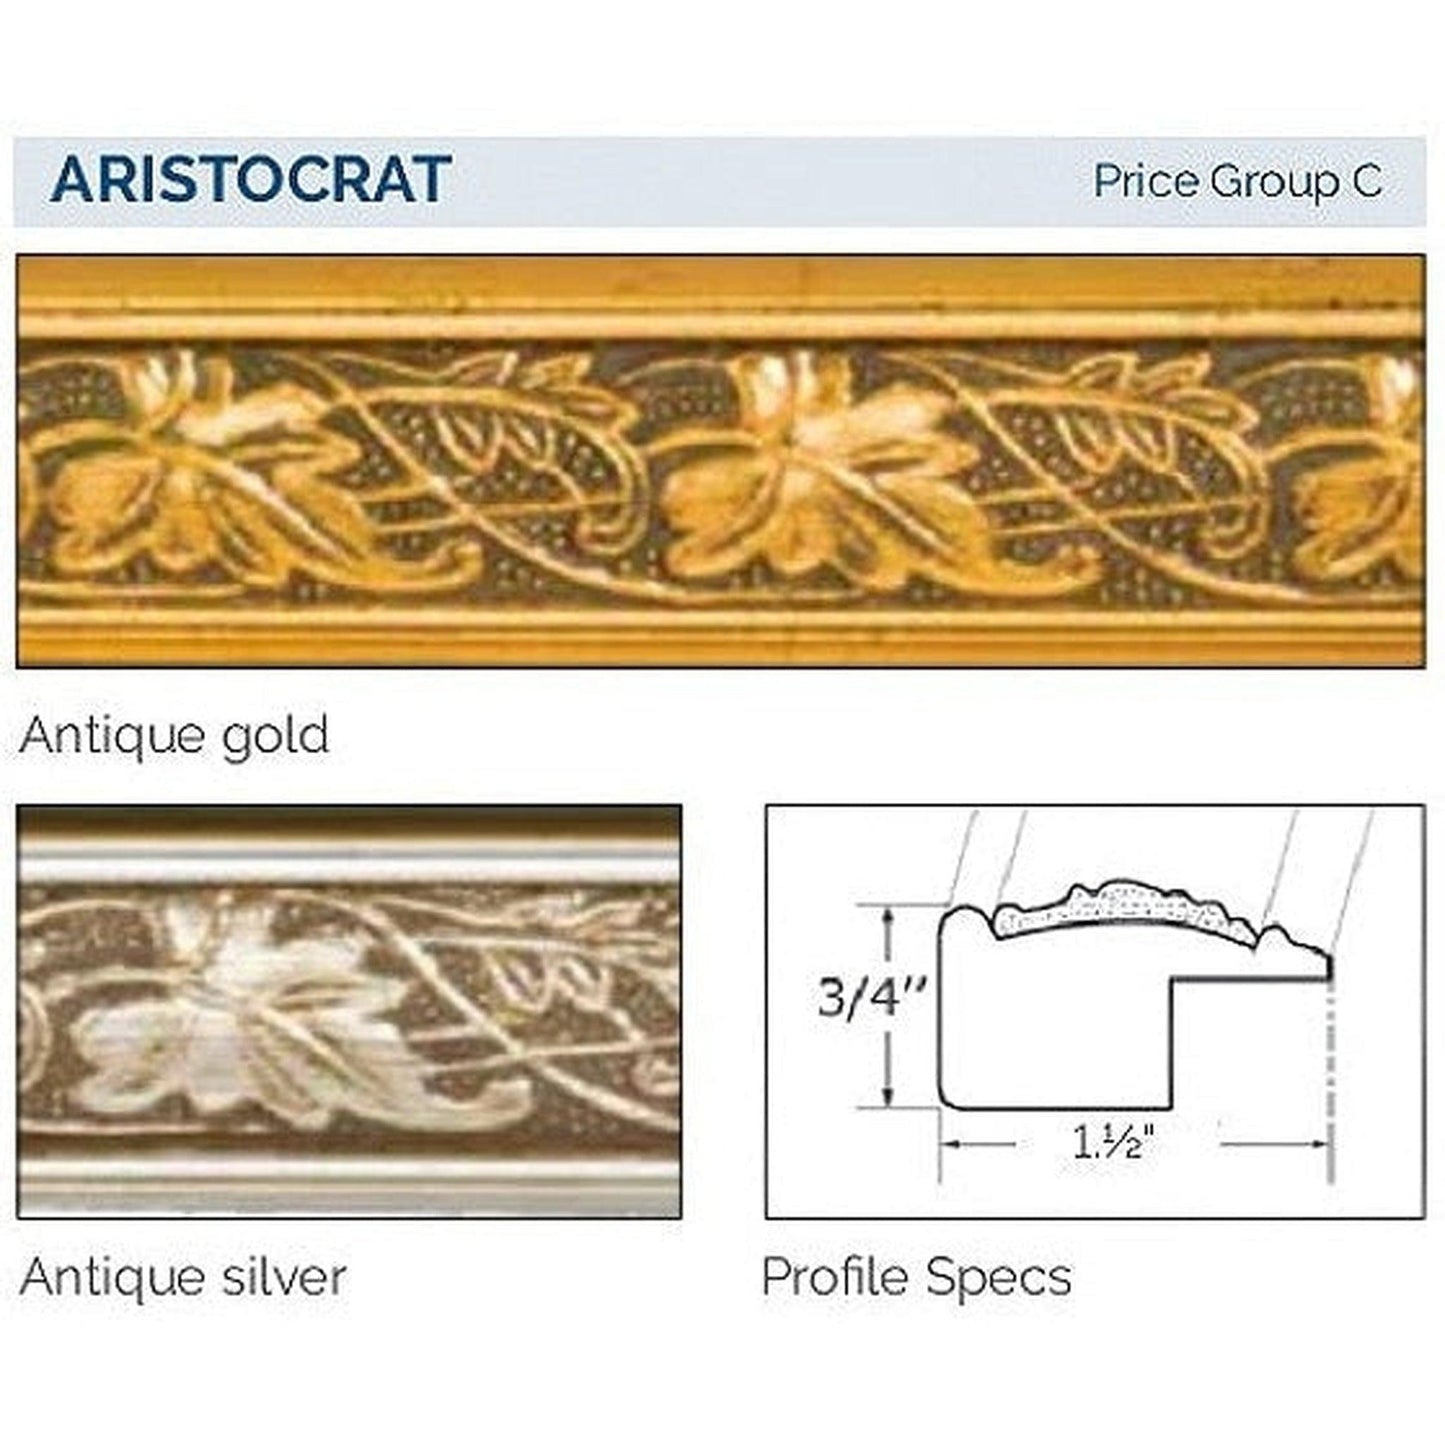 Afina Signature 17" x 30" Aristocrat Antique Gold Recessed Reversible Hinged Single Door Medicine Cabinet With Beveled Edge Mirror